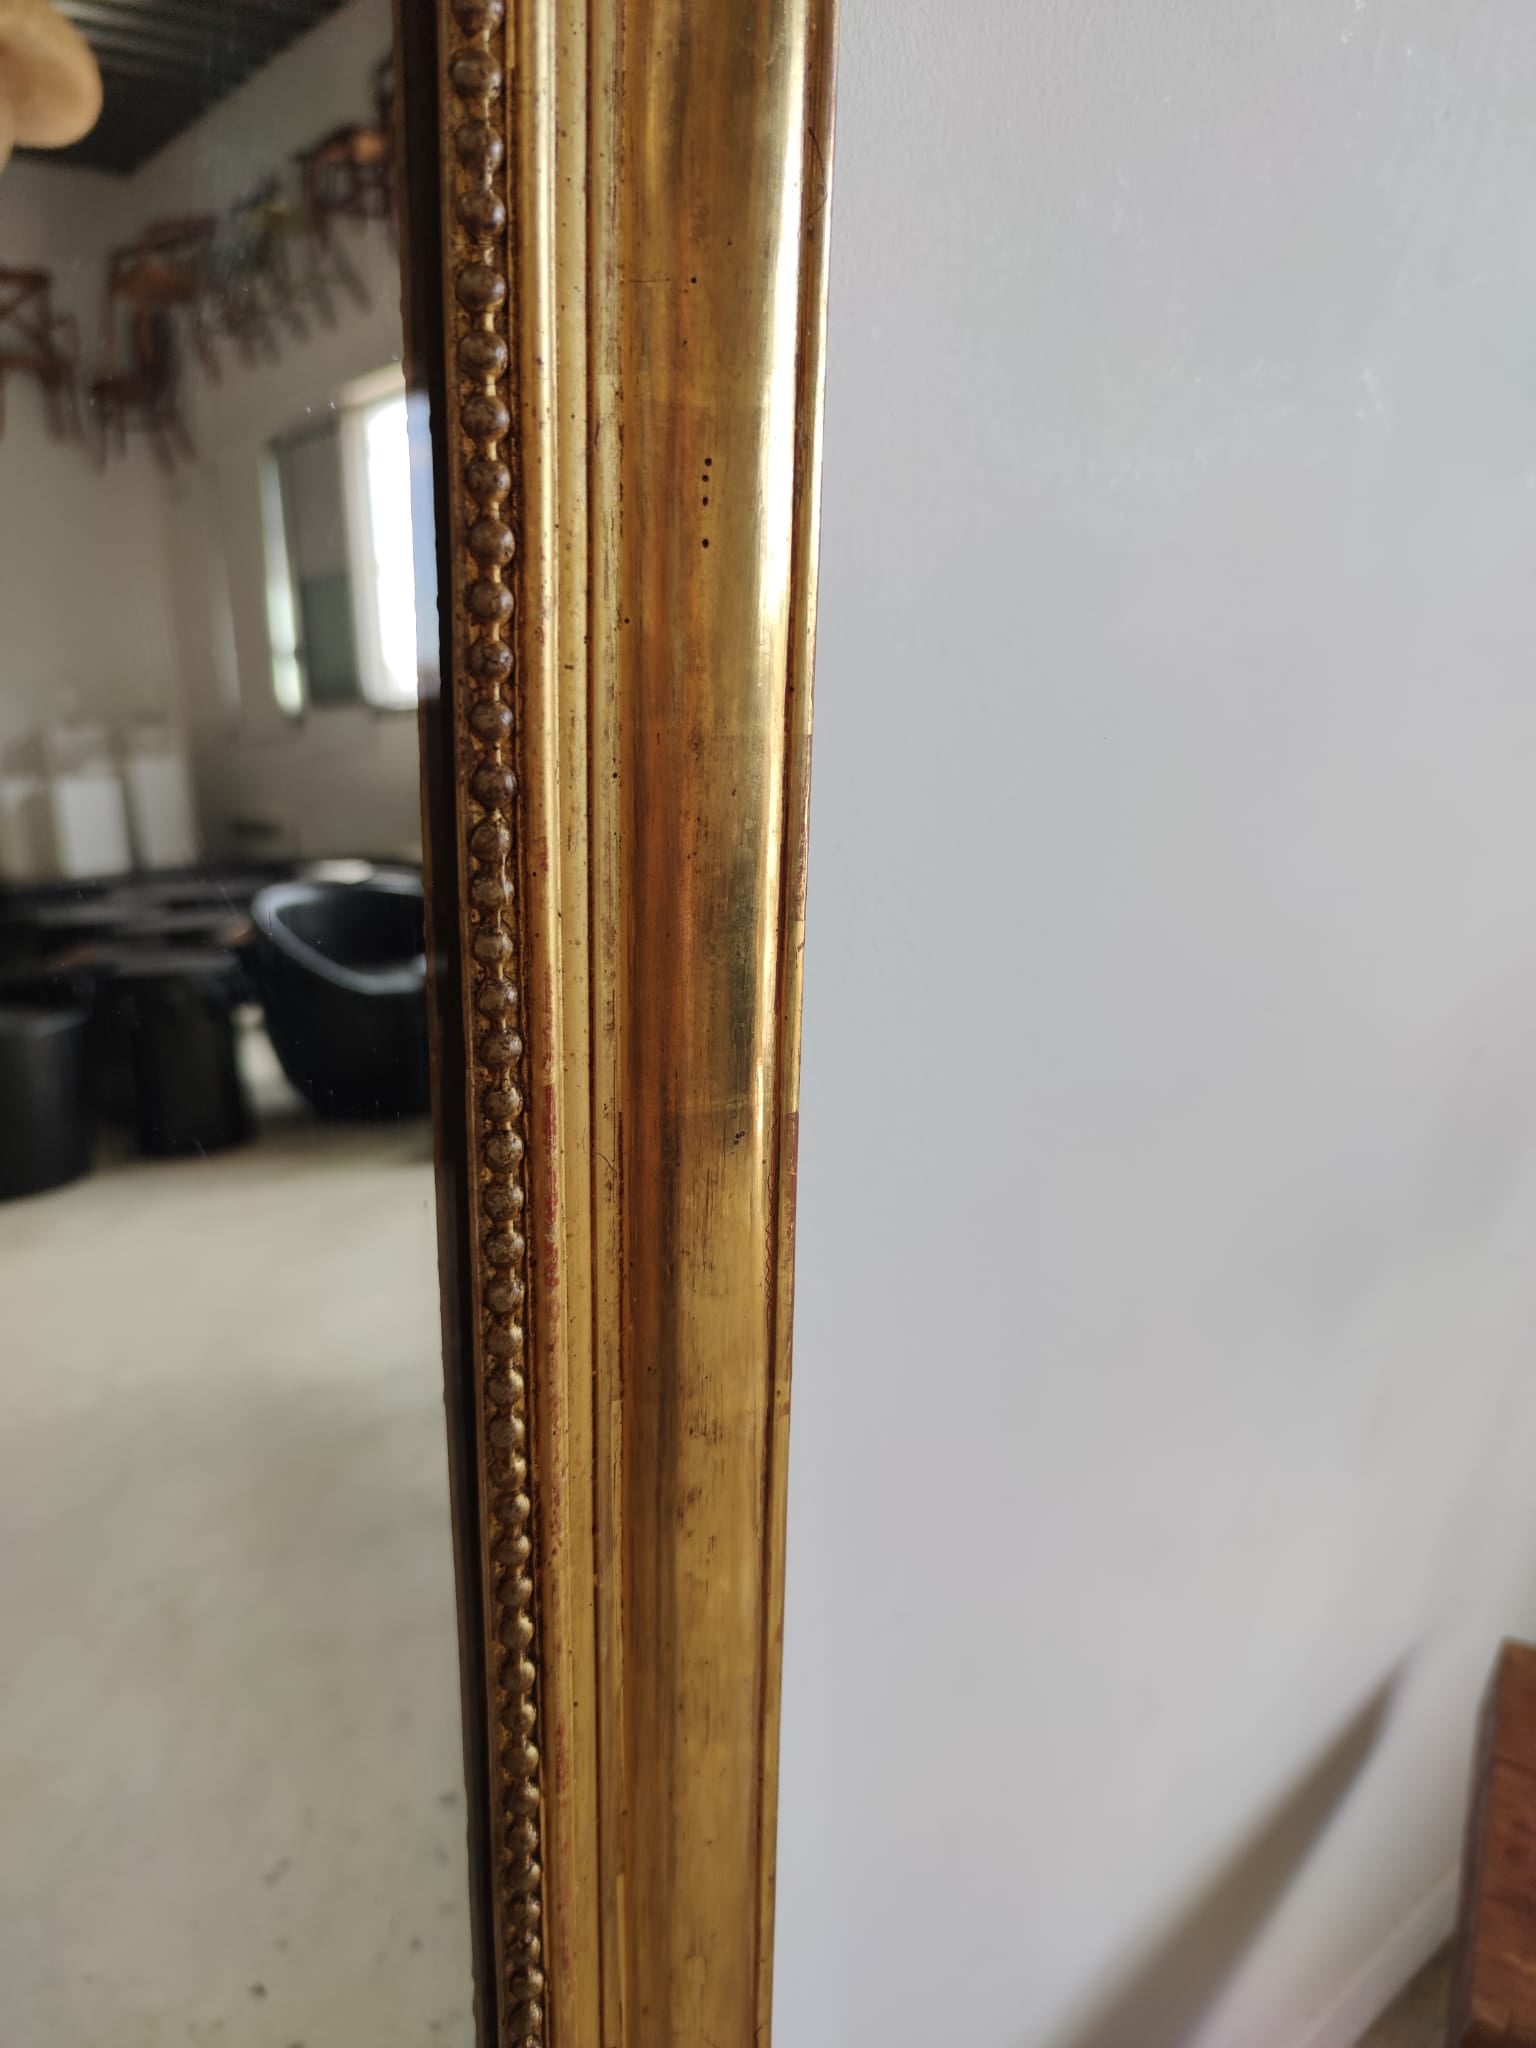 Miroir doré arrondi au décor floral en ronde bosse